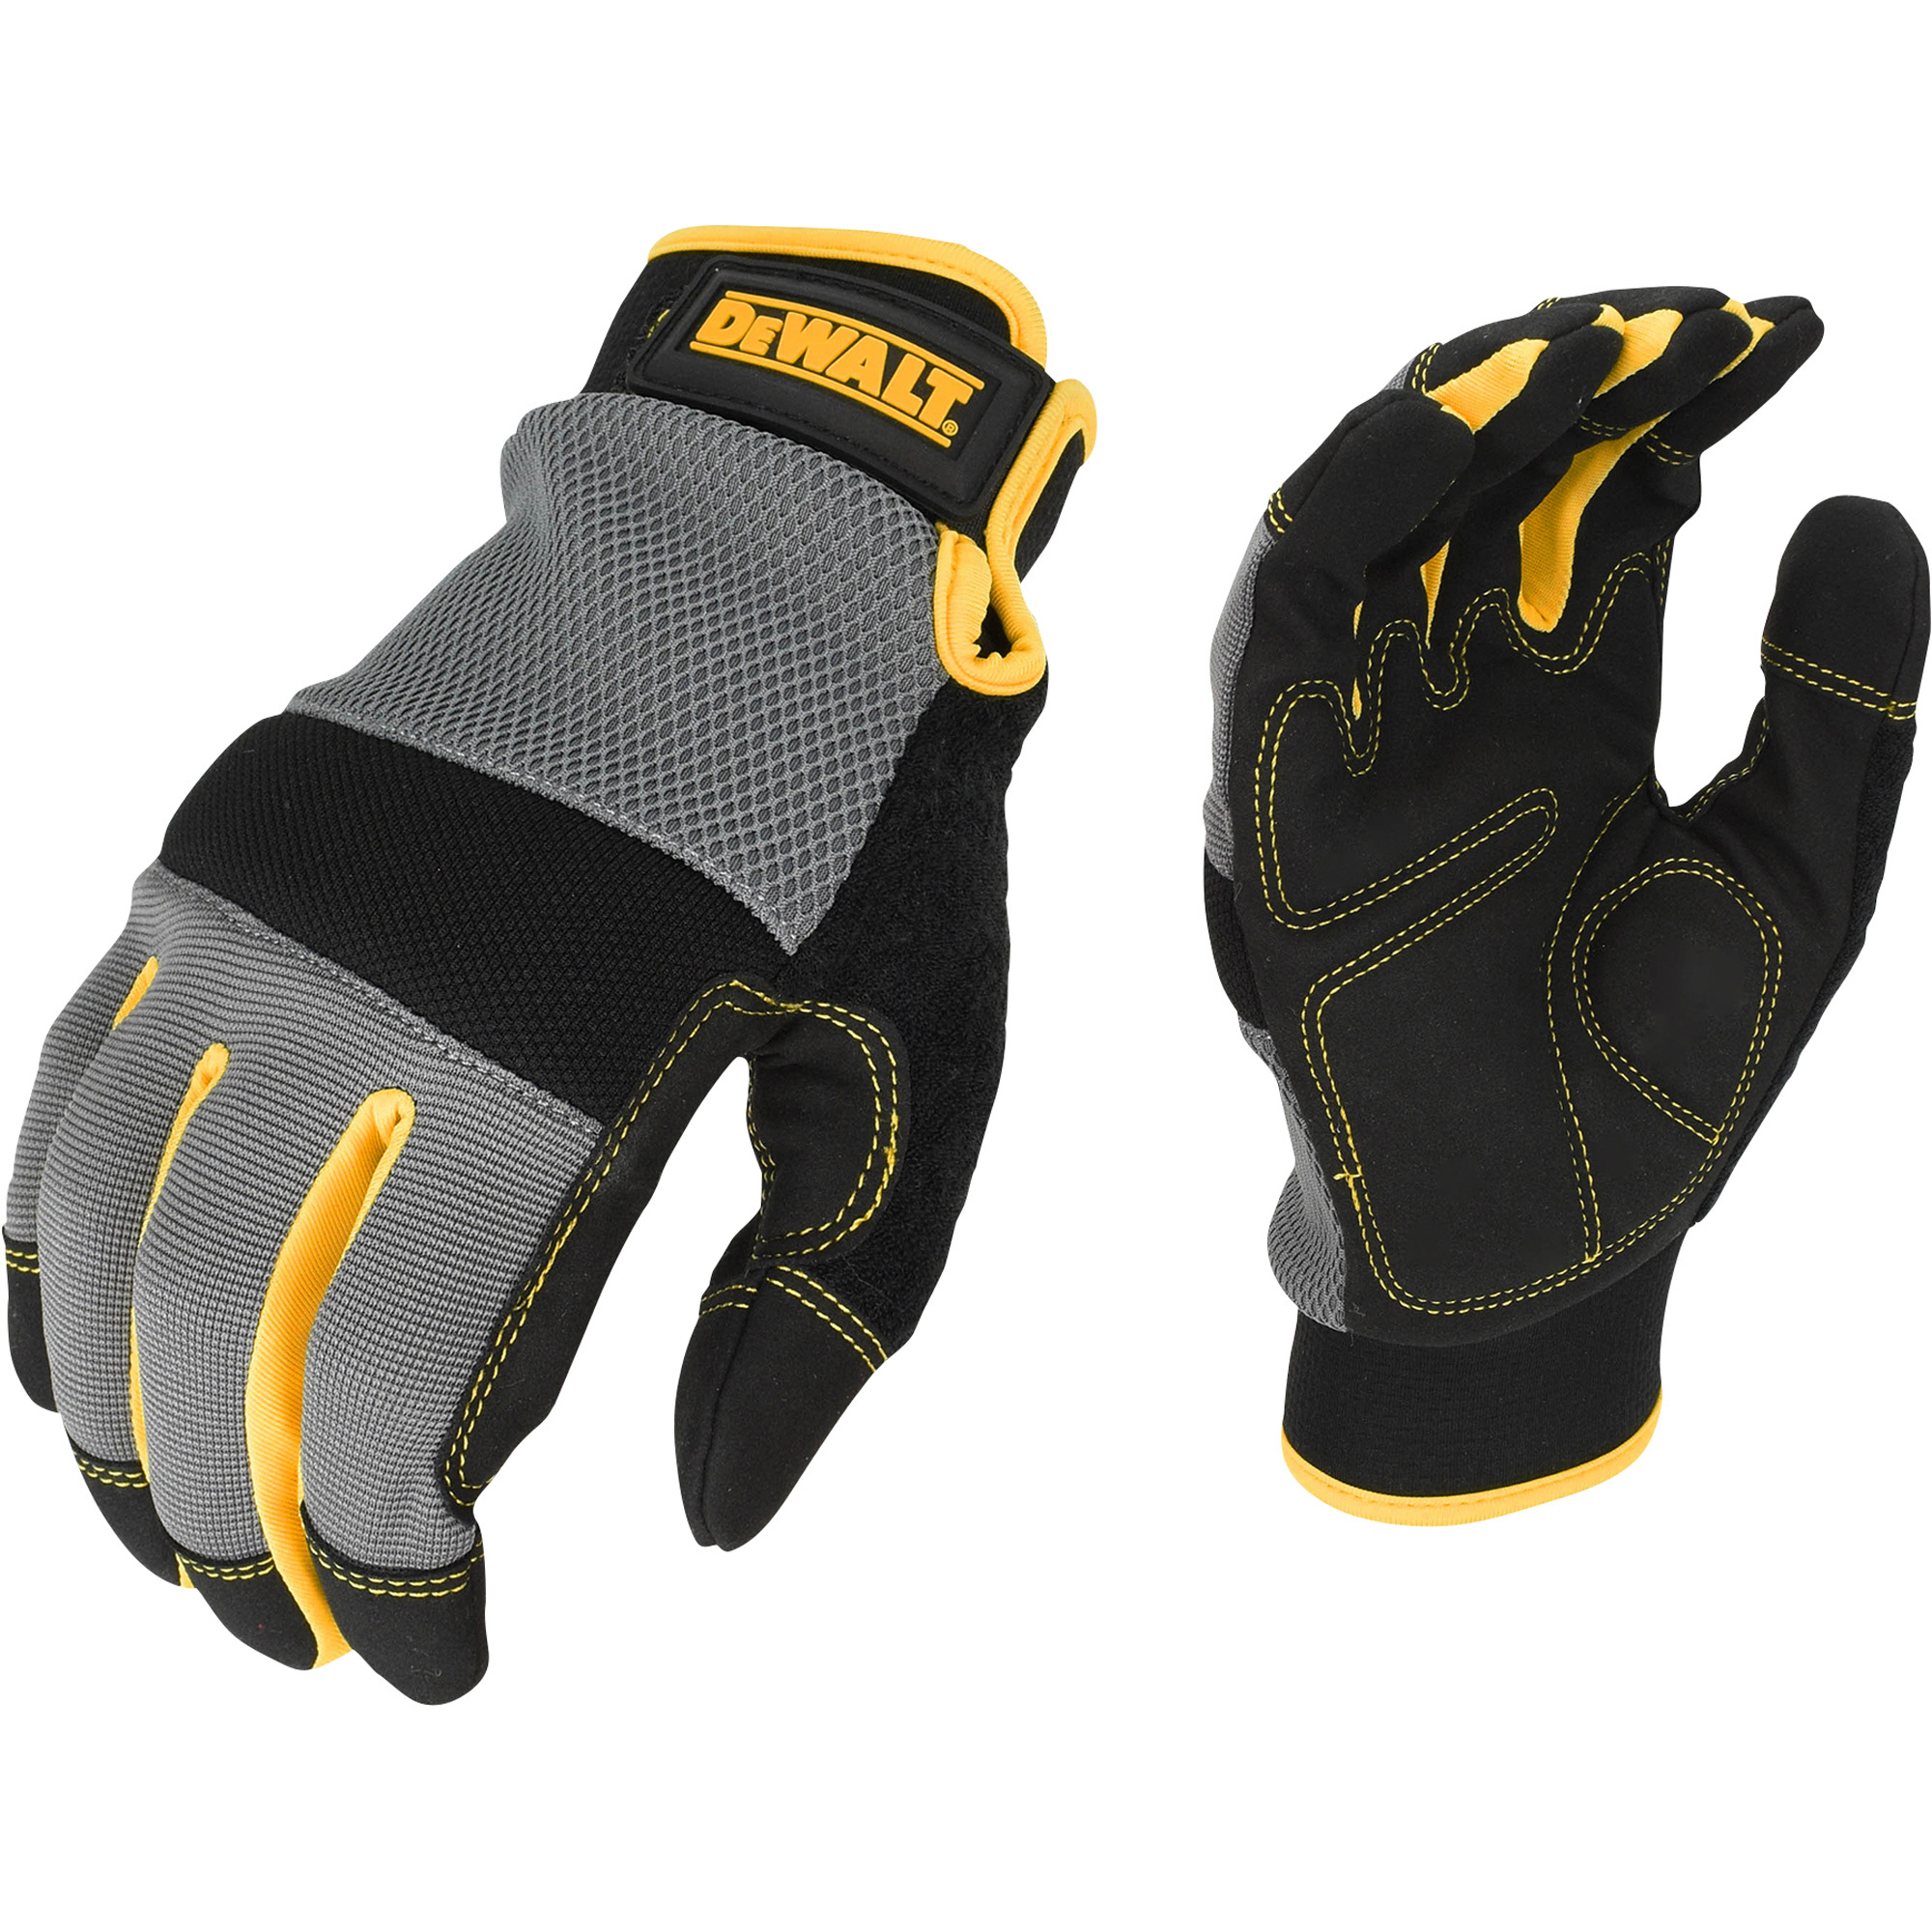 DEWALT Men's Foam Padded Performance Mechanic's Gloves â Gray/Black/Yellow, Medium, Model DPG211M